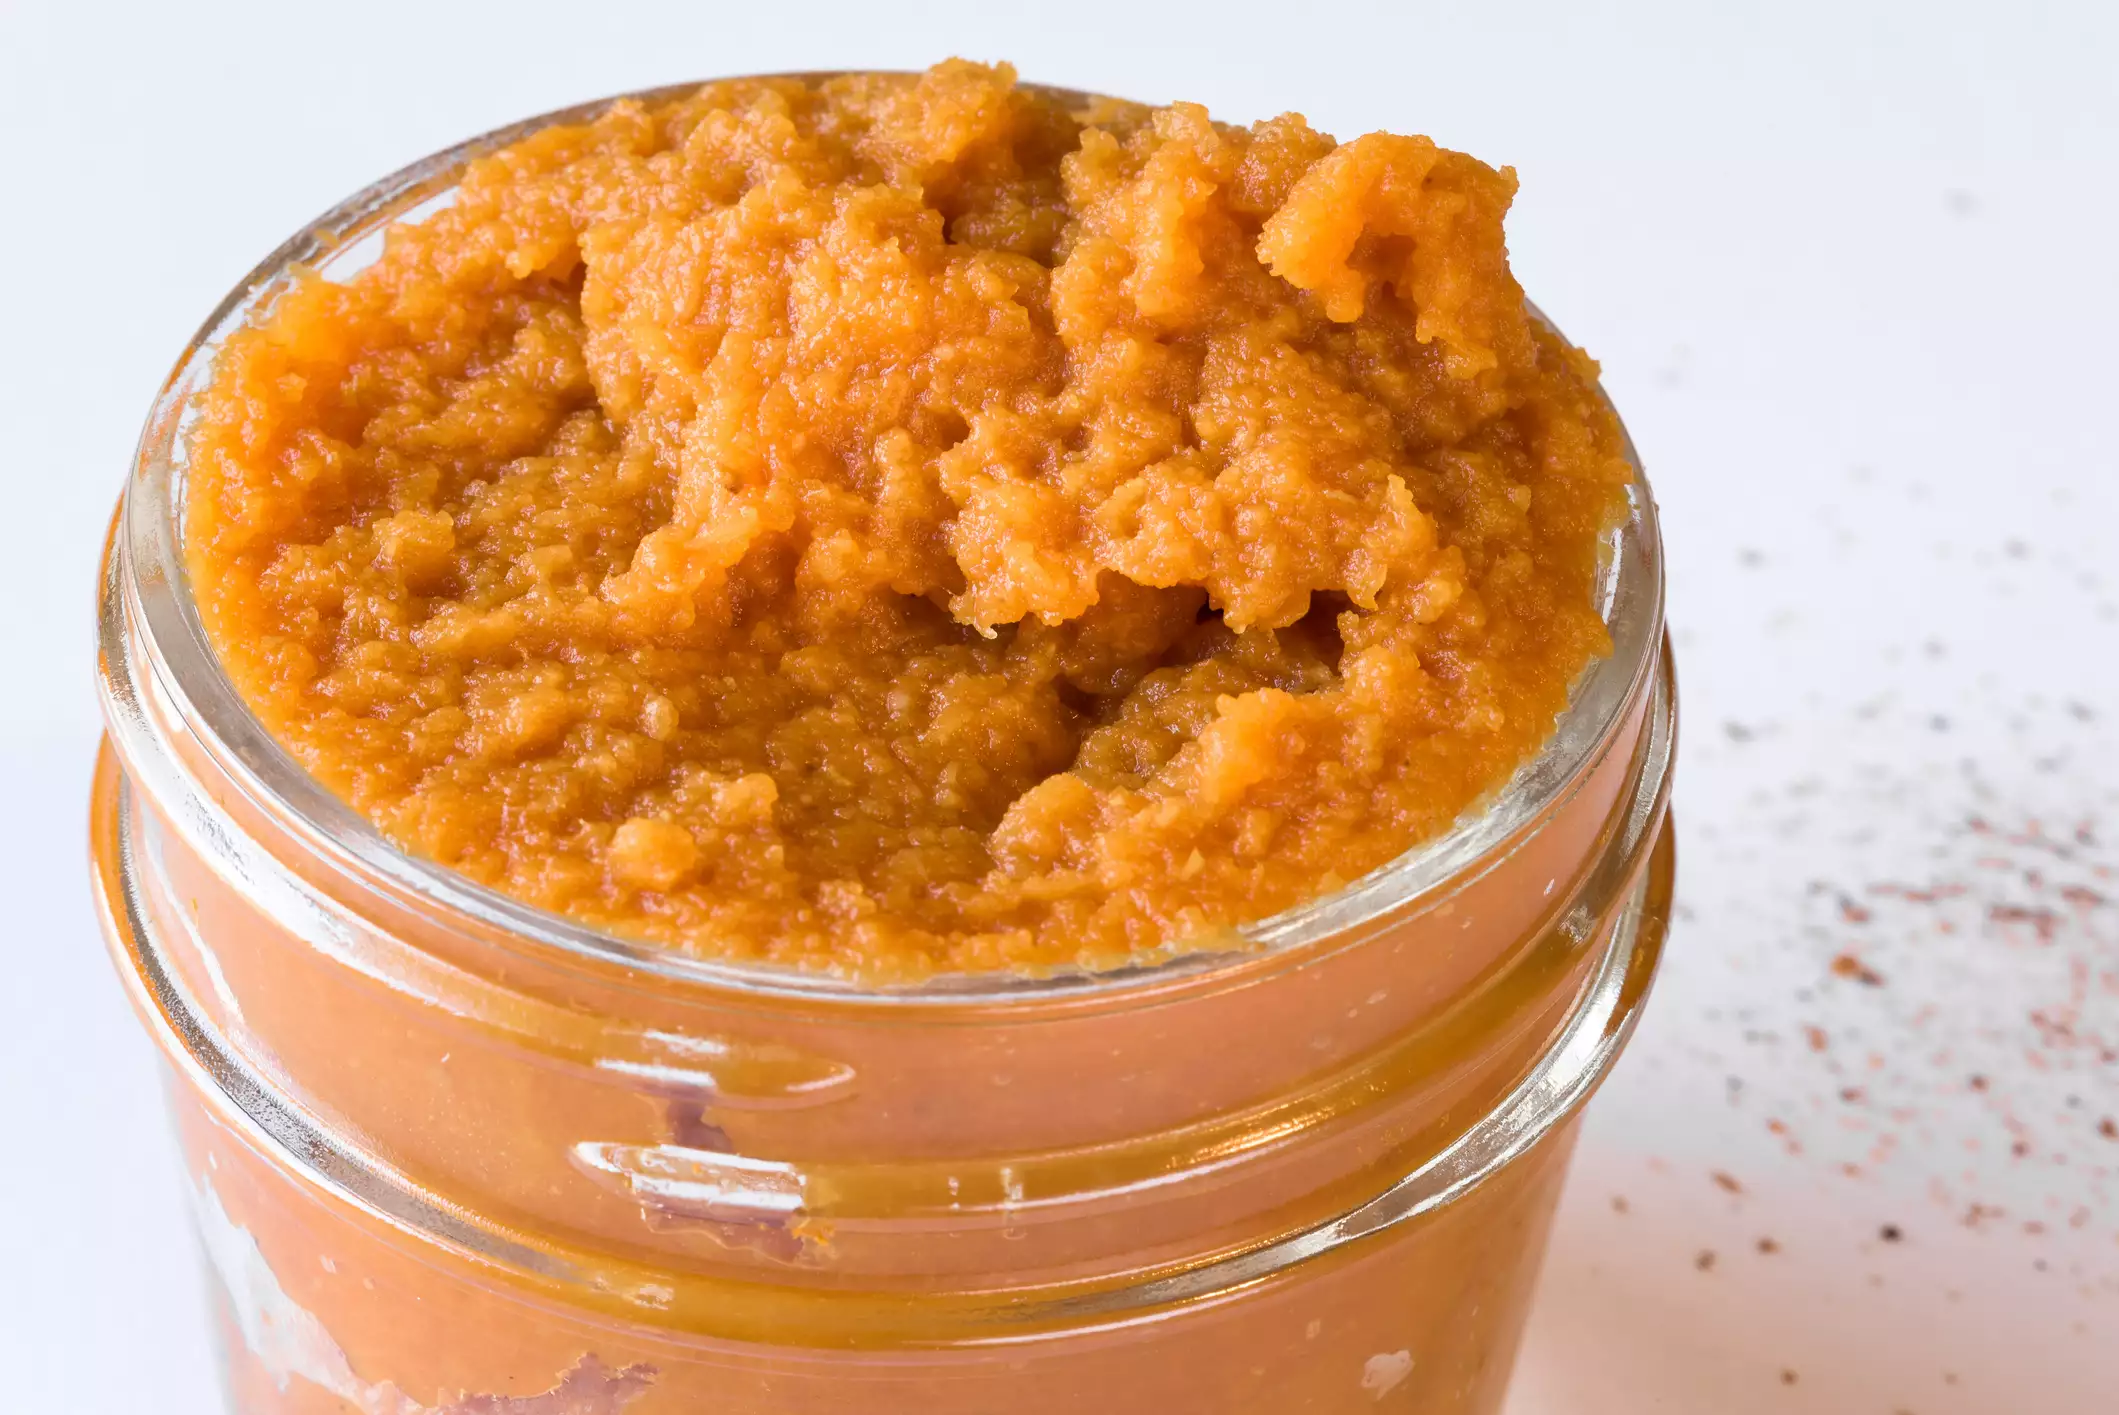 Pumpkin pureed in a glass jar.